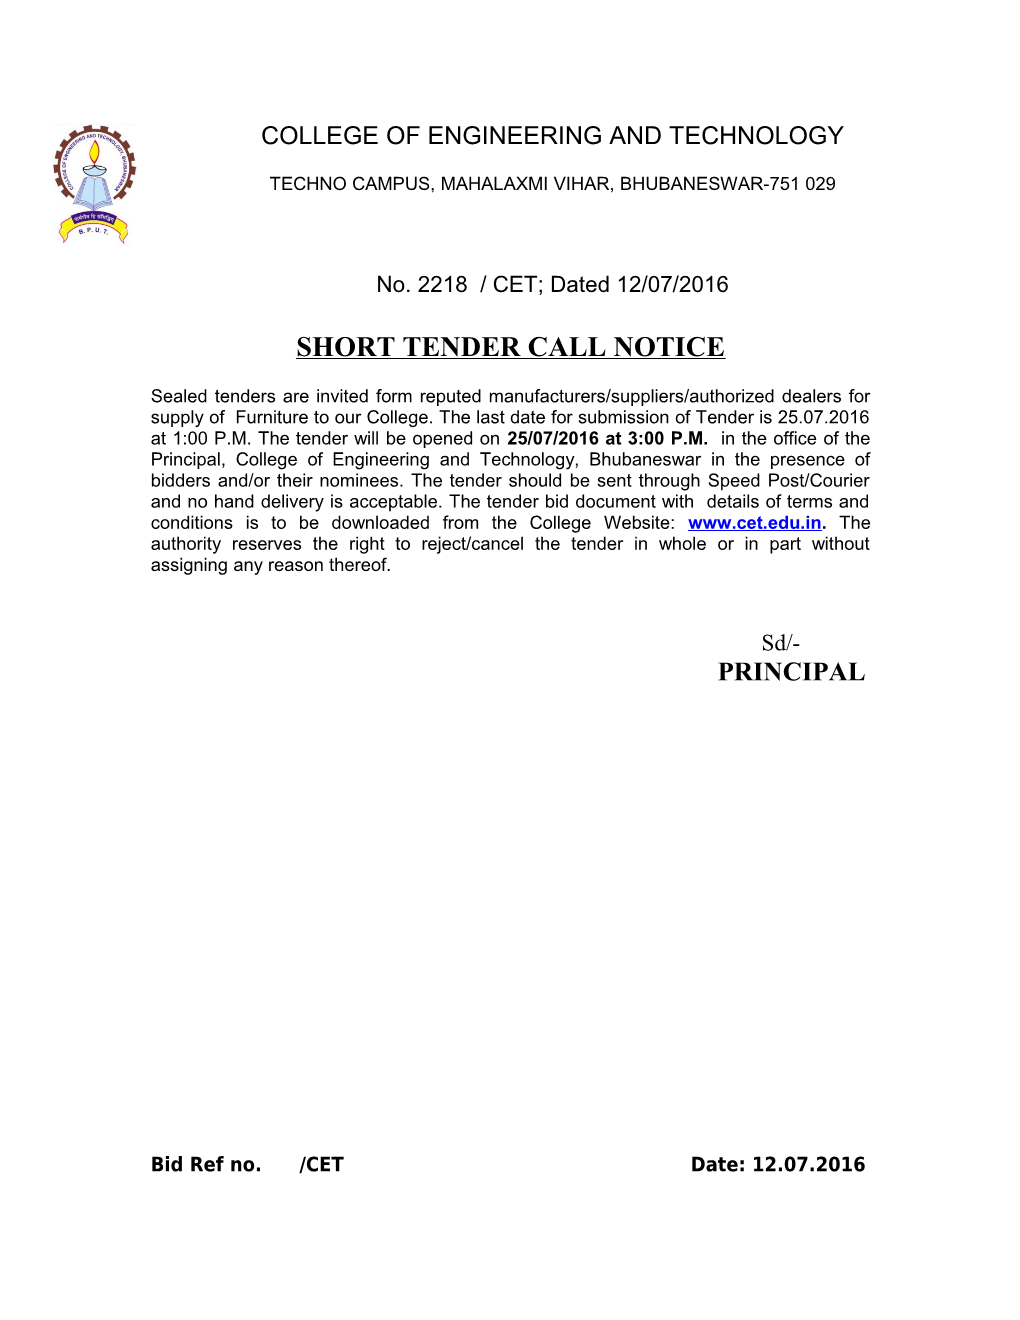 Short Tender Call Notice